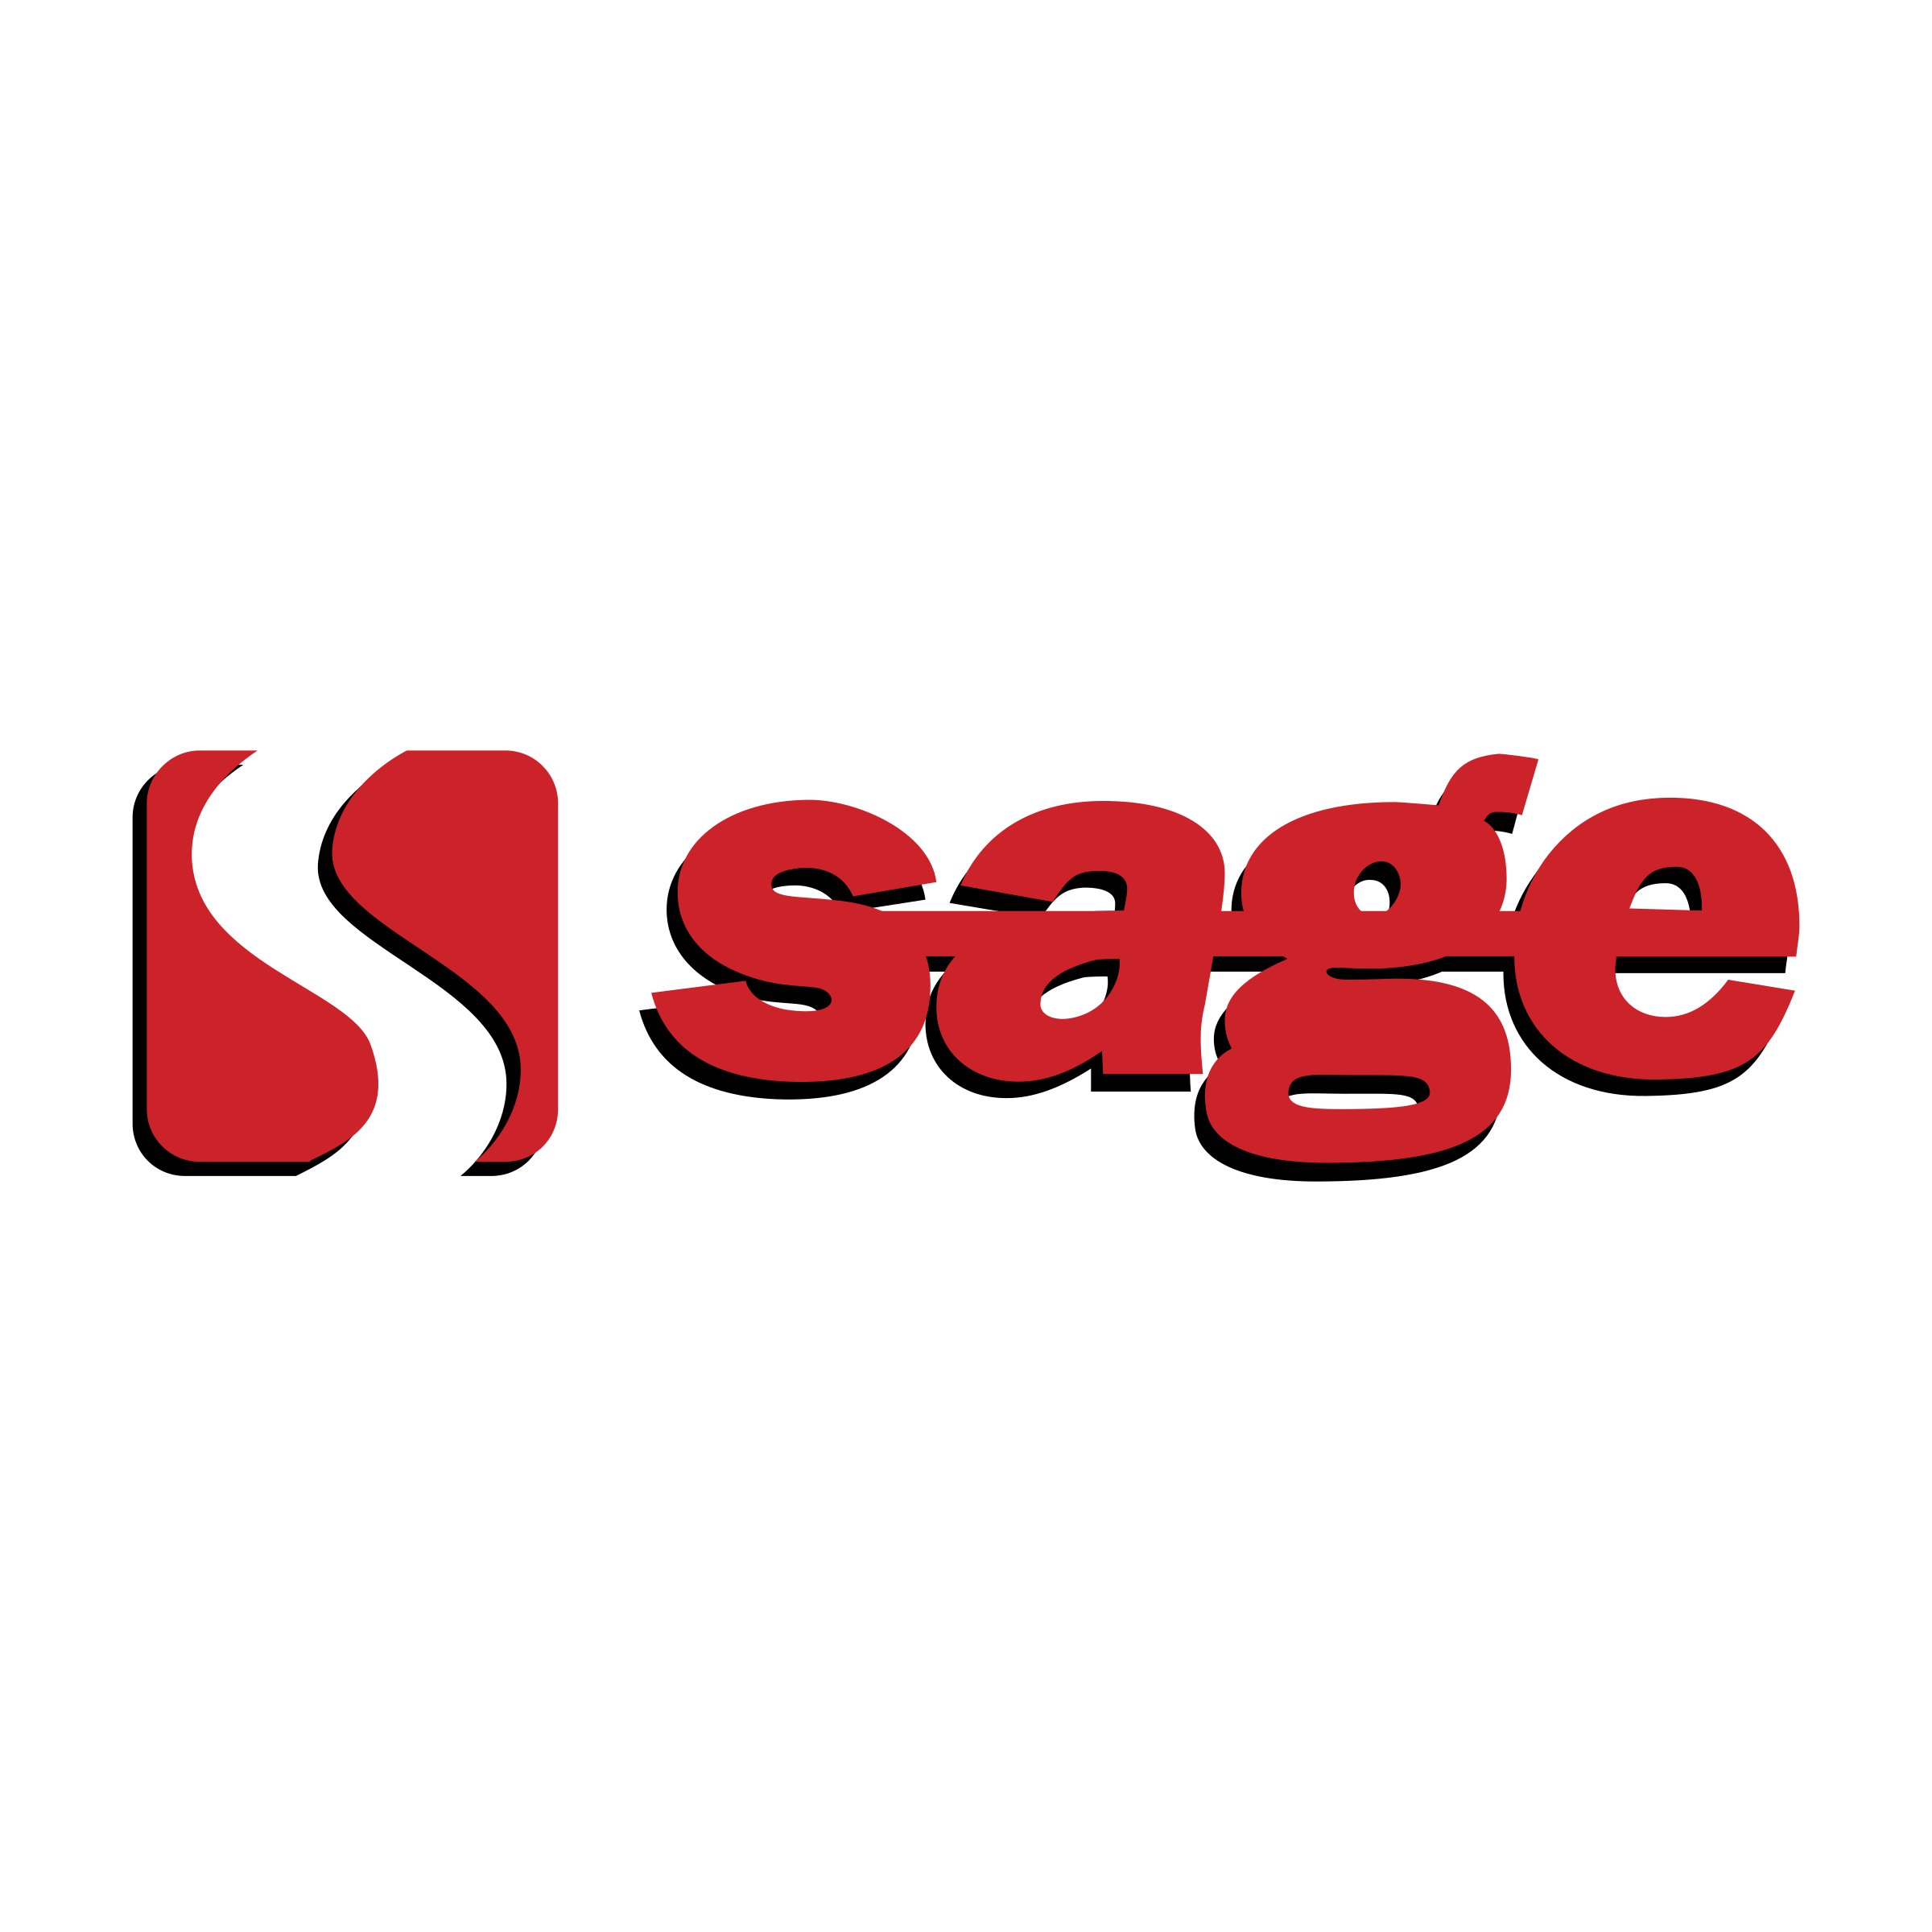 Sage Transparent Logo - Sage Logo PNG Transparent & SVG Vector - Freebie Supply